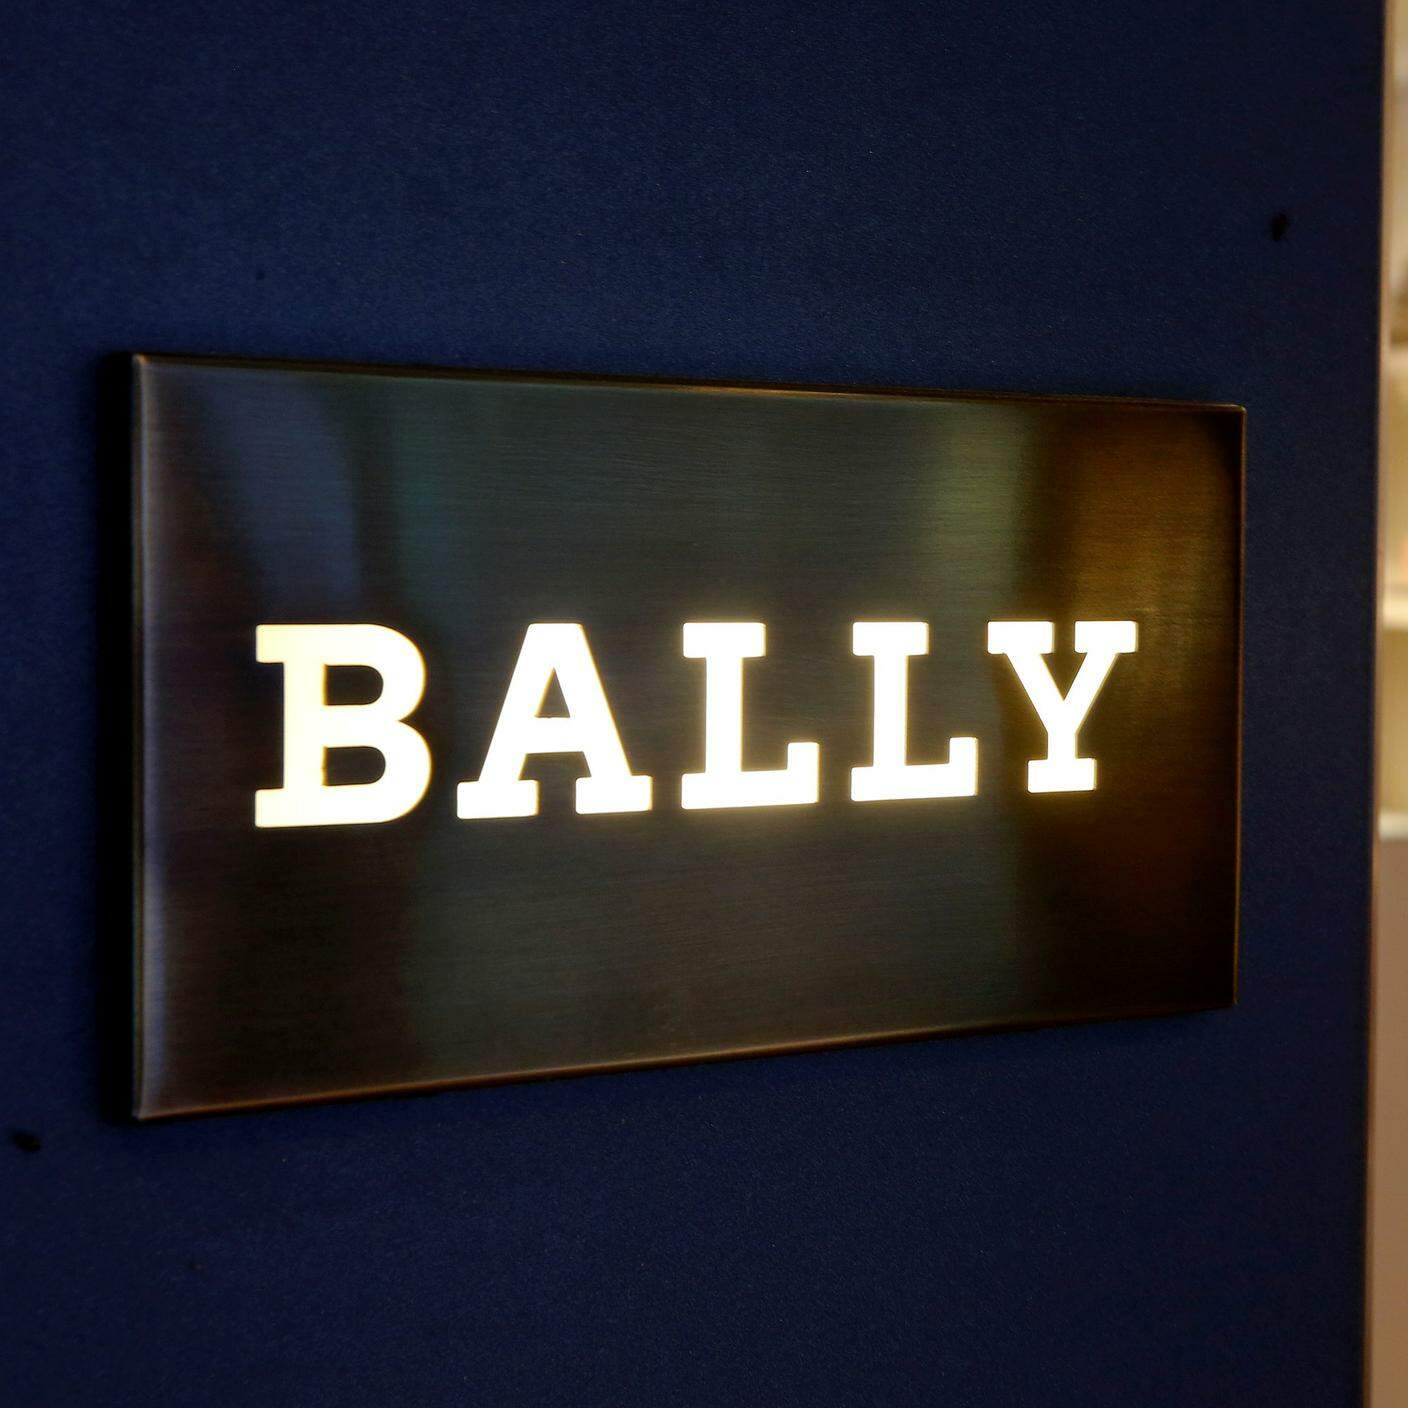 Pure un marchio prestigioso come Bally diventa proprietà di una ditta cinese